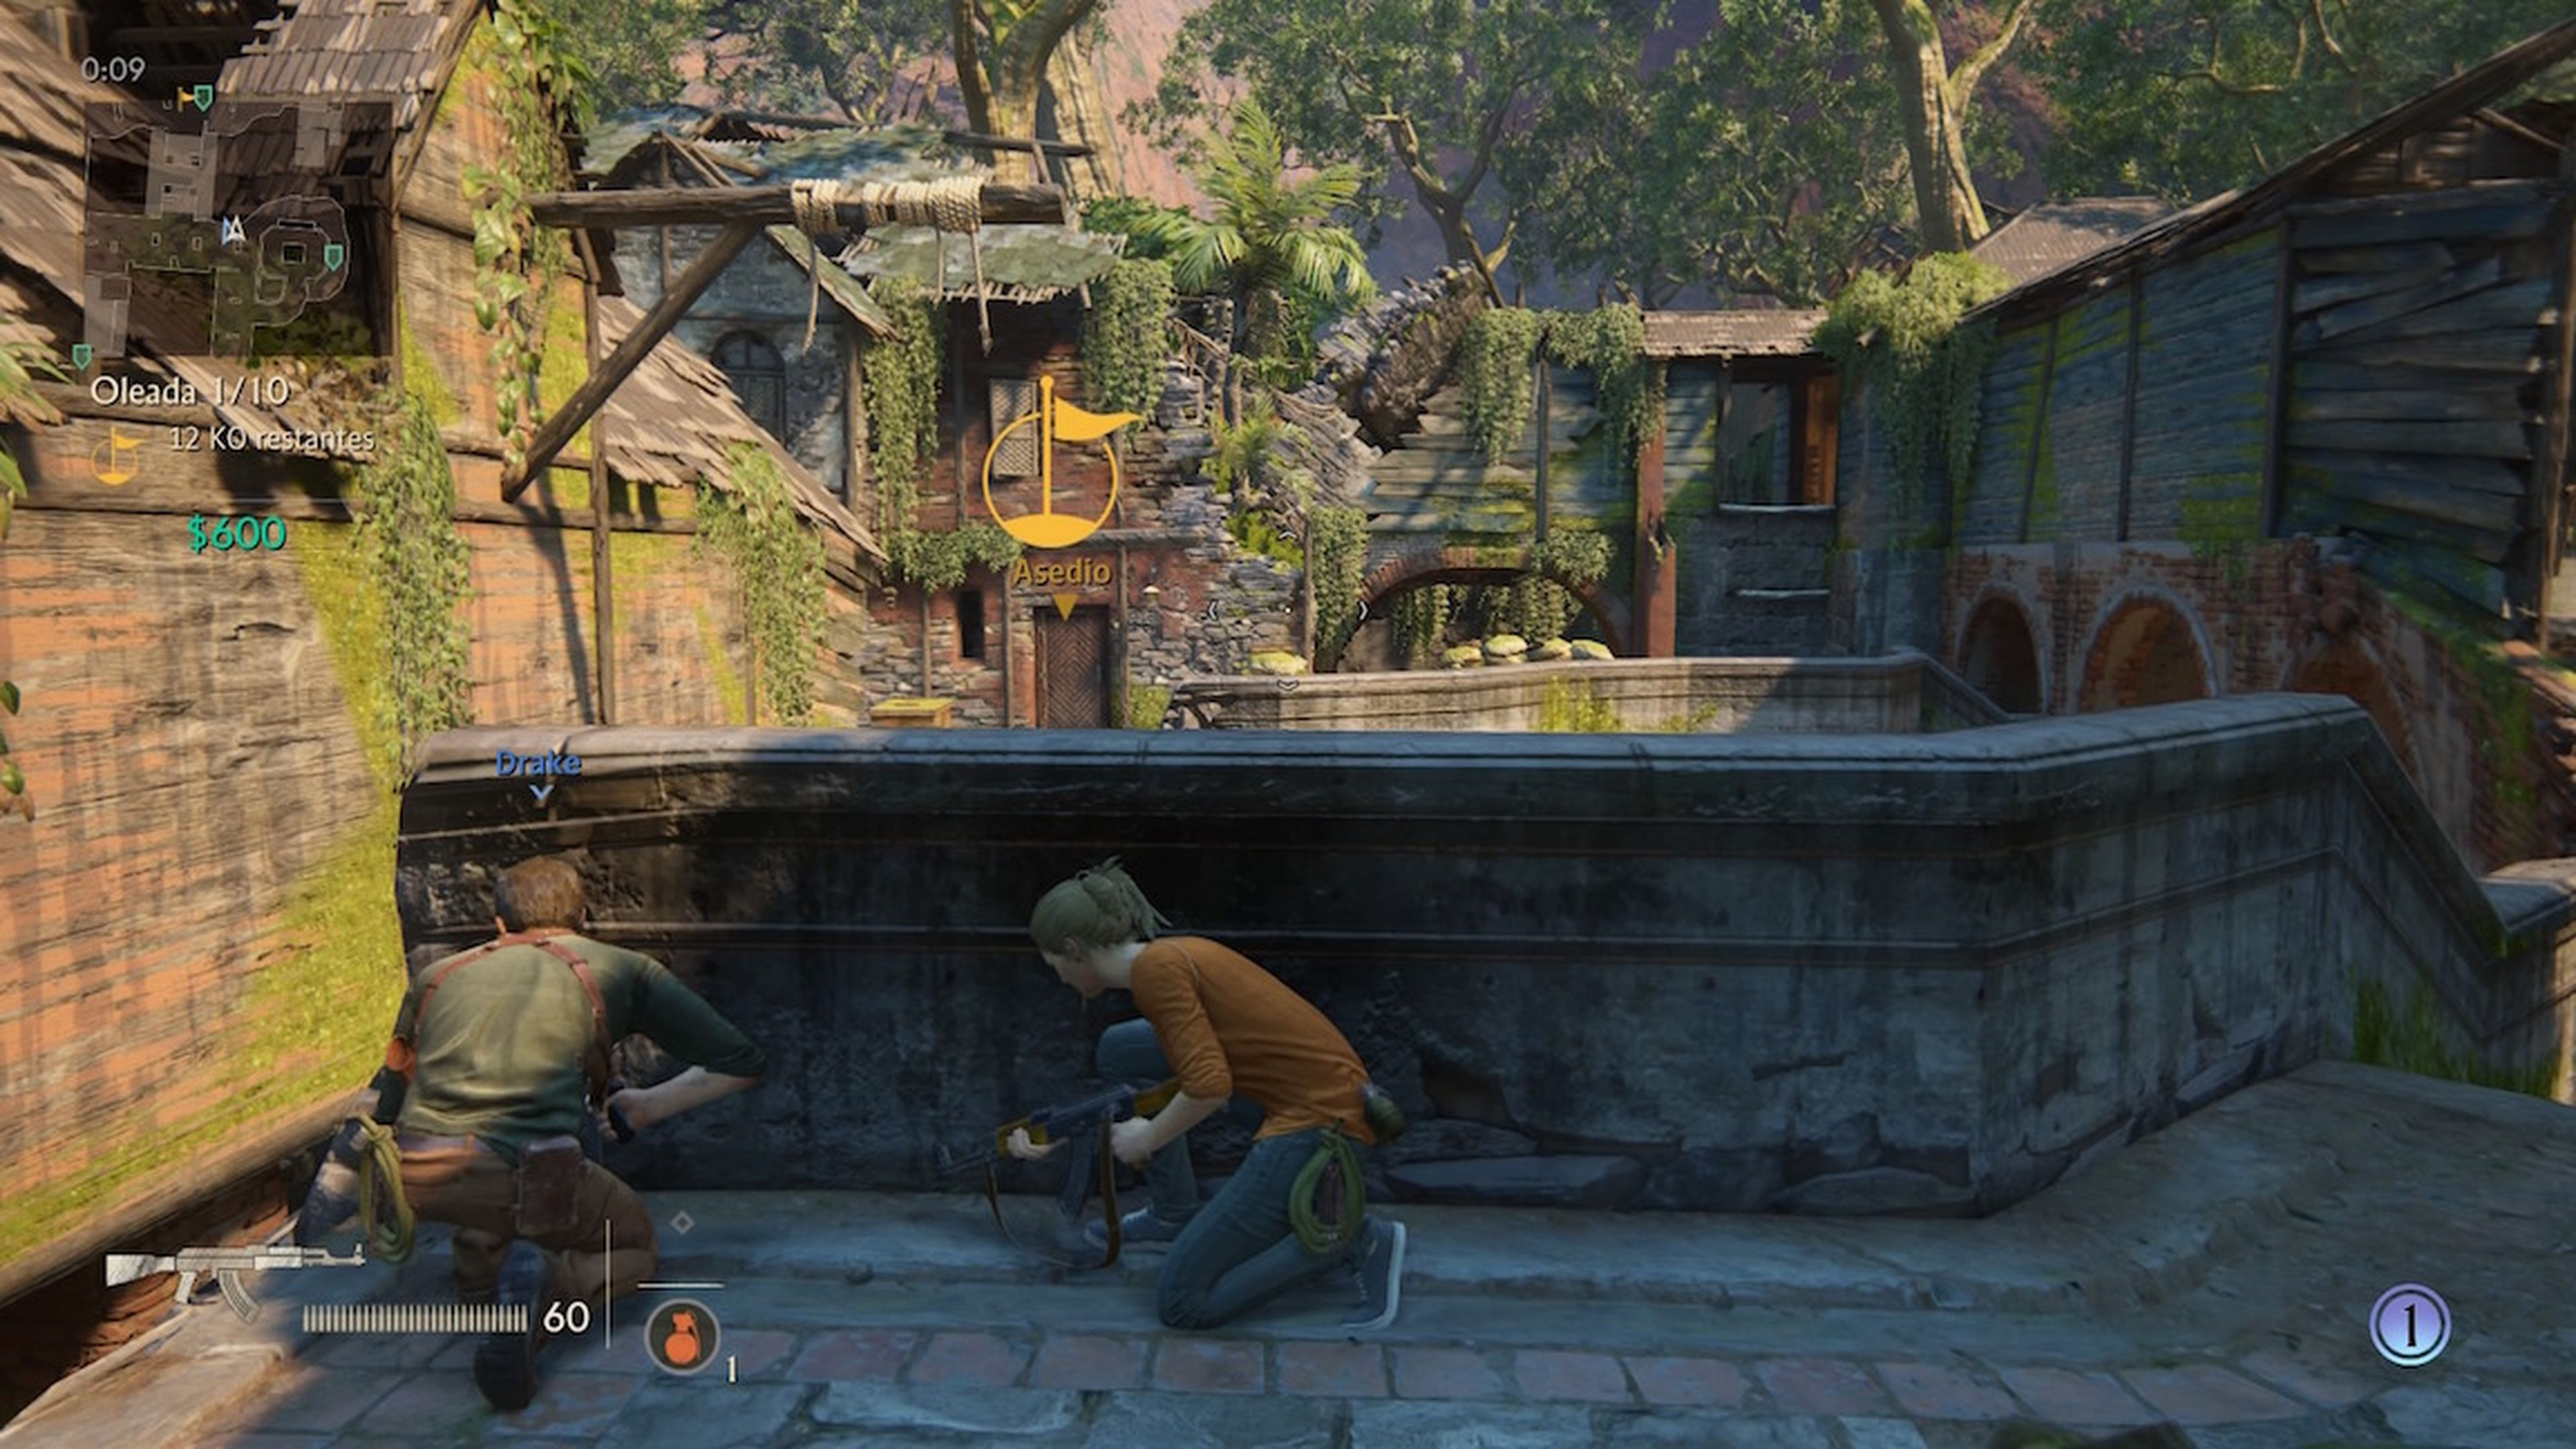 Análisis de Uncharted: El legado perdido para PS4